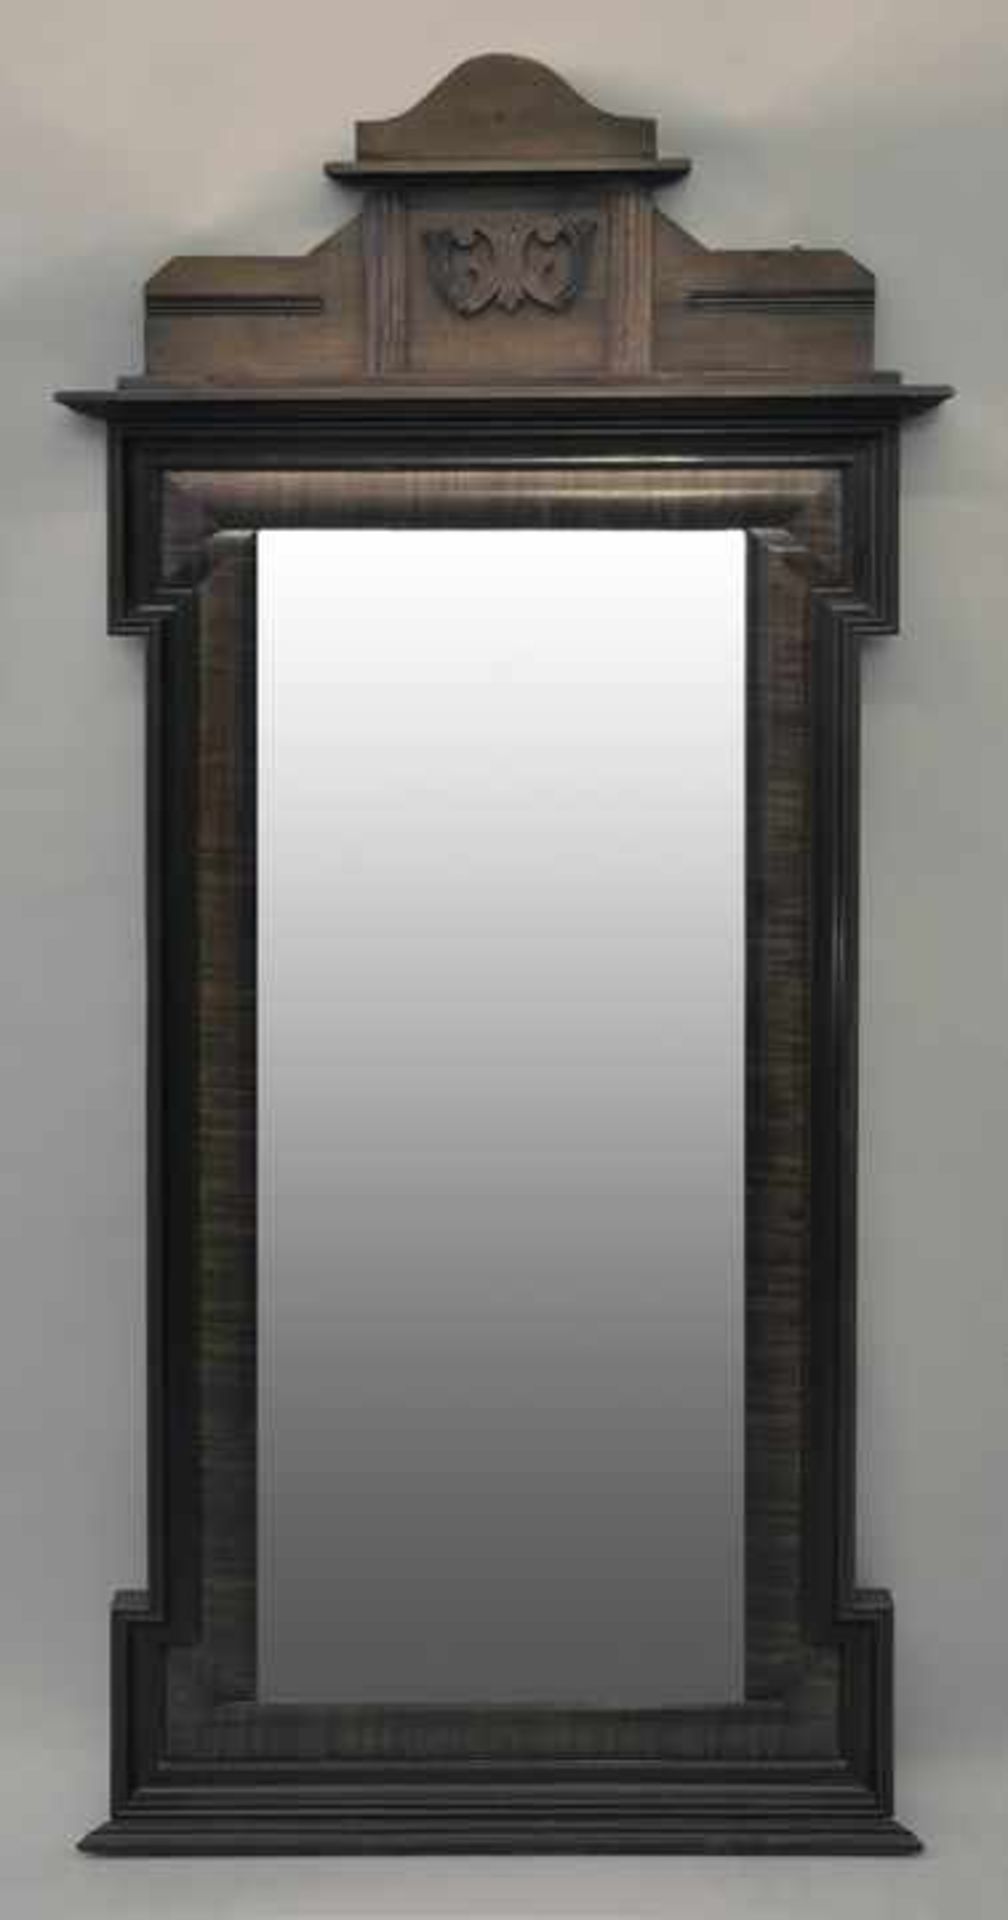 Gründerzeitspiegel, um 1880 7,5 cm Holzleiste, Nadelholz furniert, verkröpft. Aufsatz-Giebelbrett